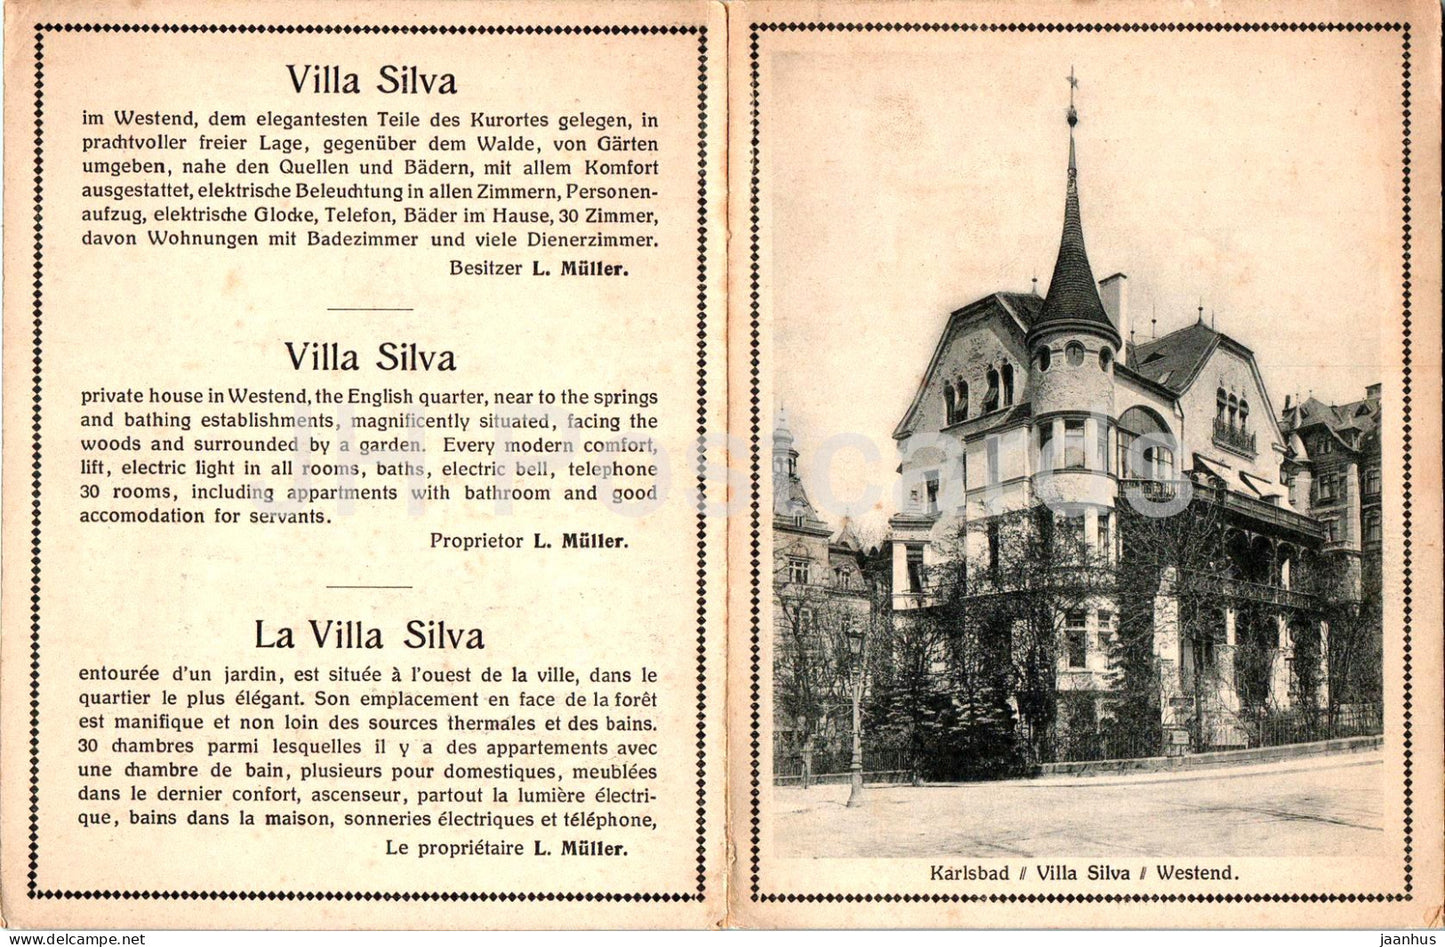 Karlsbad - Villa Silva - Westend - Hotel - alte Ansichtskarte - Tschechien - gebraucht